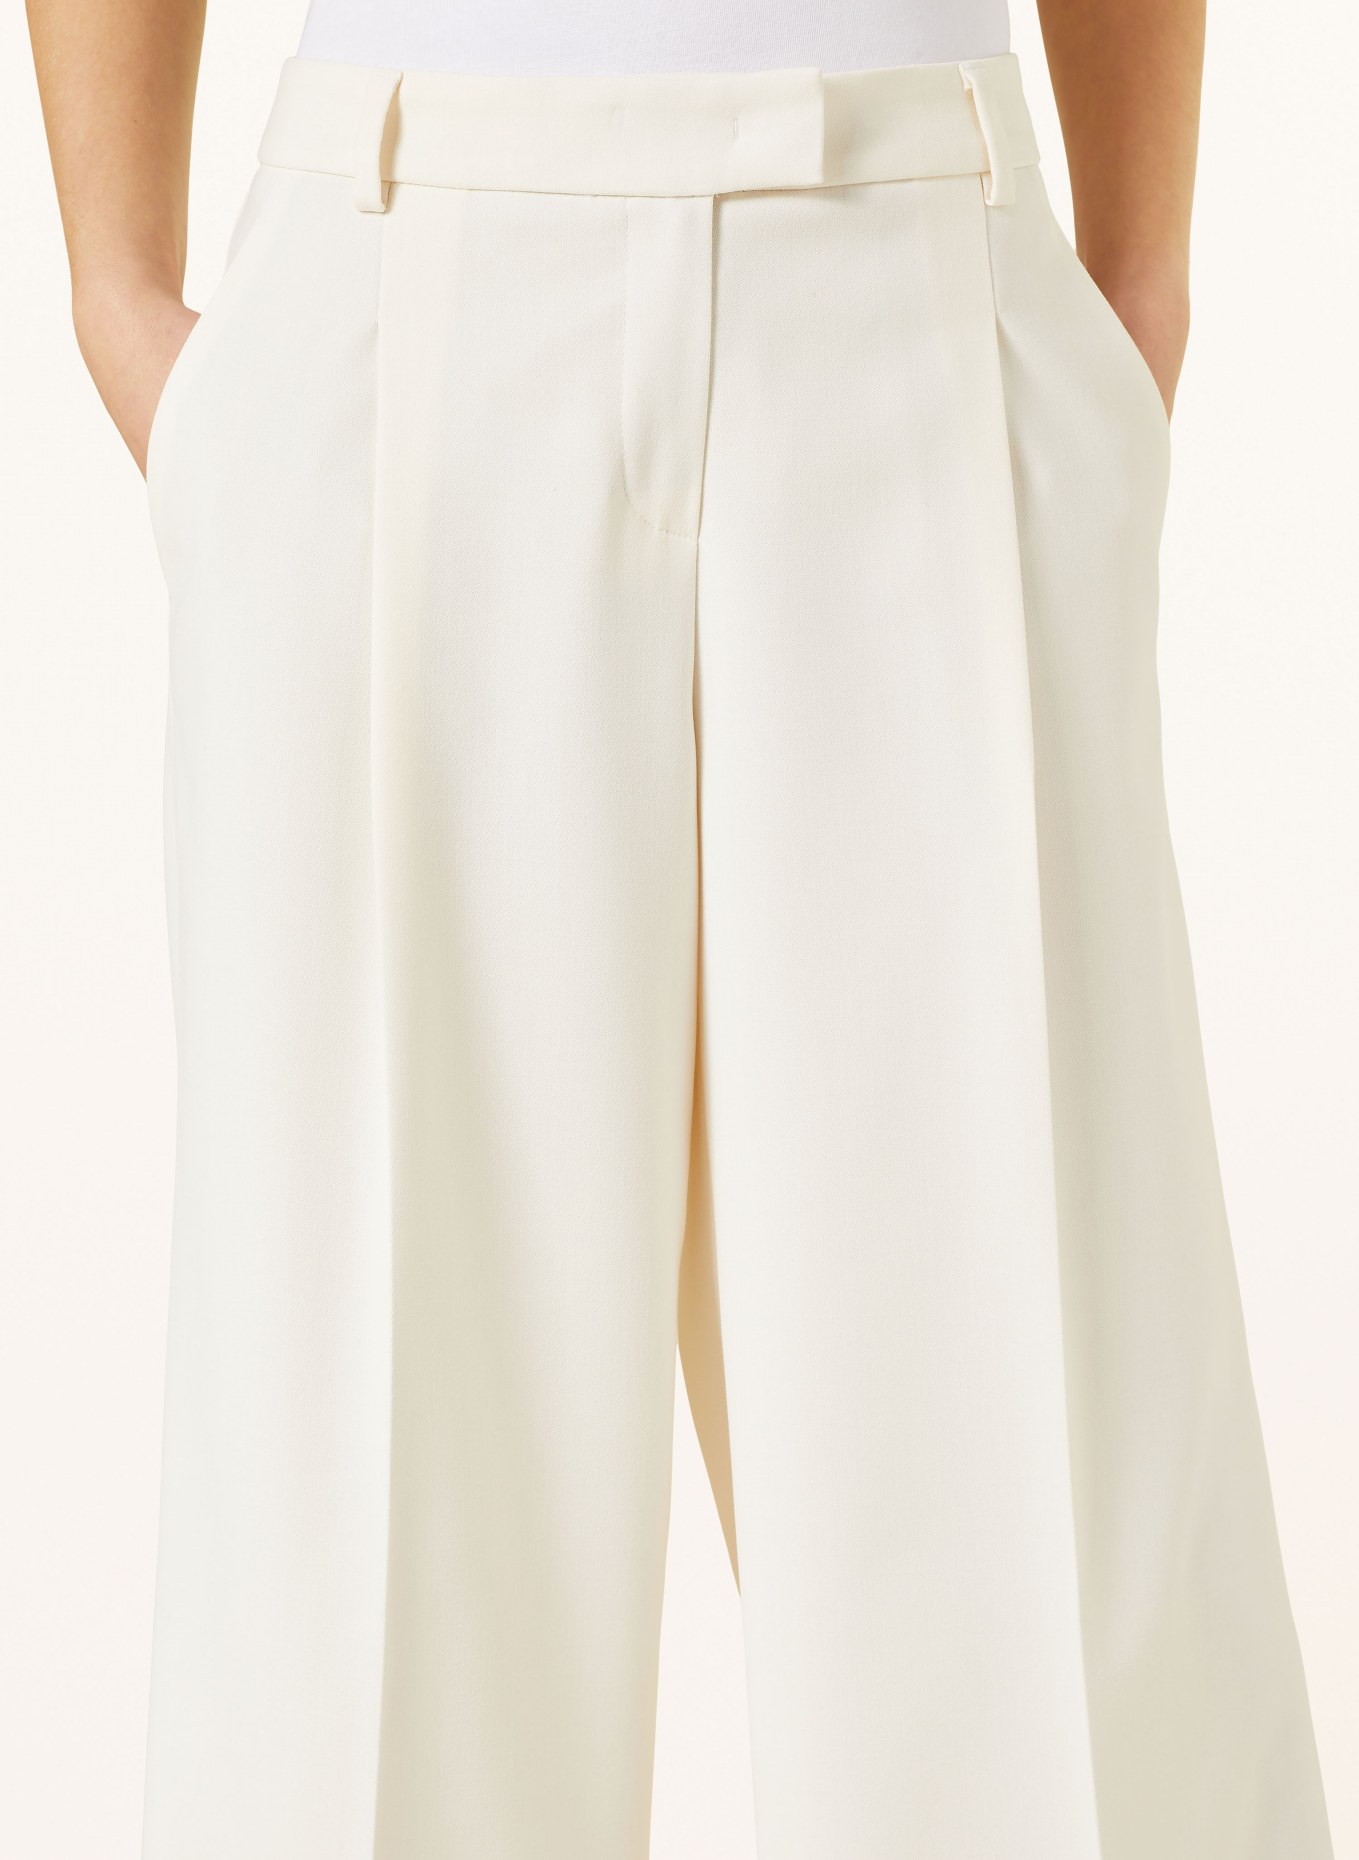 SEDUCTIVE Pants ARTA, Color: BEIGE (Image 5)